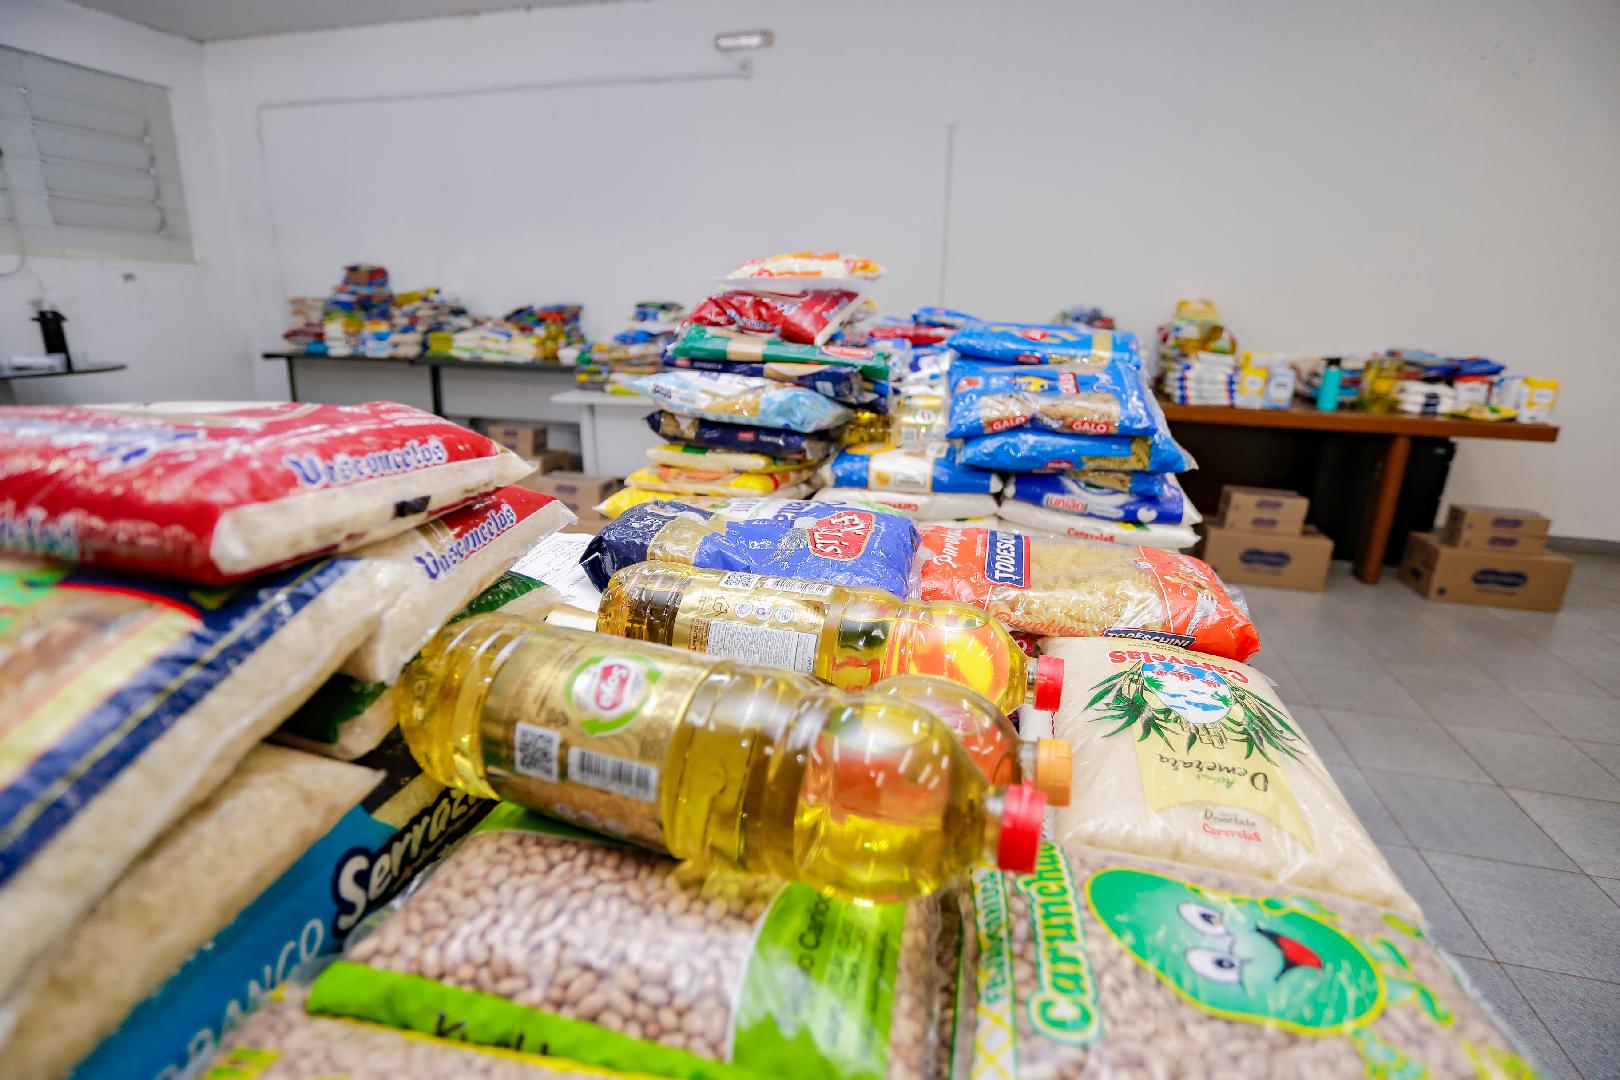 Fundo Social de Solidariedade realiza entrega 1,3 toneladas de alimentos arrecadados em evento "Melhor RP"